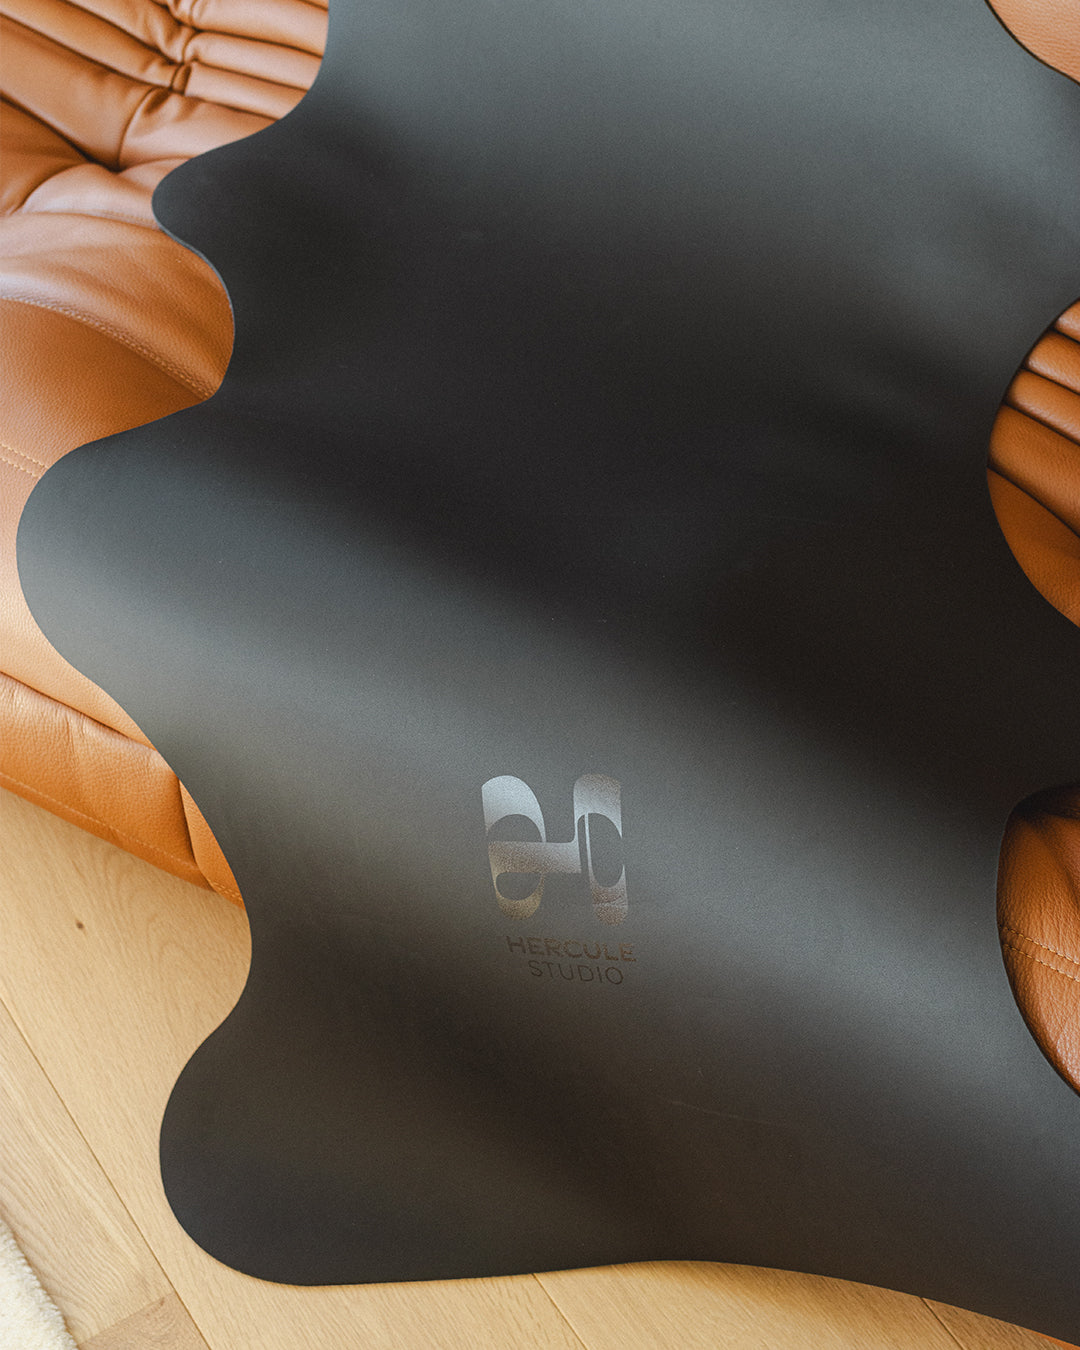 Tapis de sol pour le yoga de la marque hercule studio modèle mar couleur outrenoir photo lifestyle zoom logo photo sur canapé en cuir marron